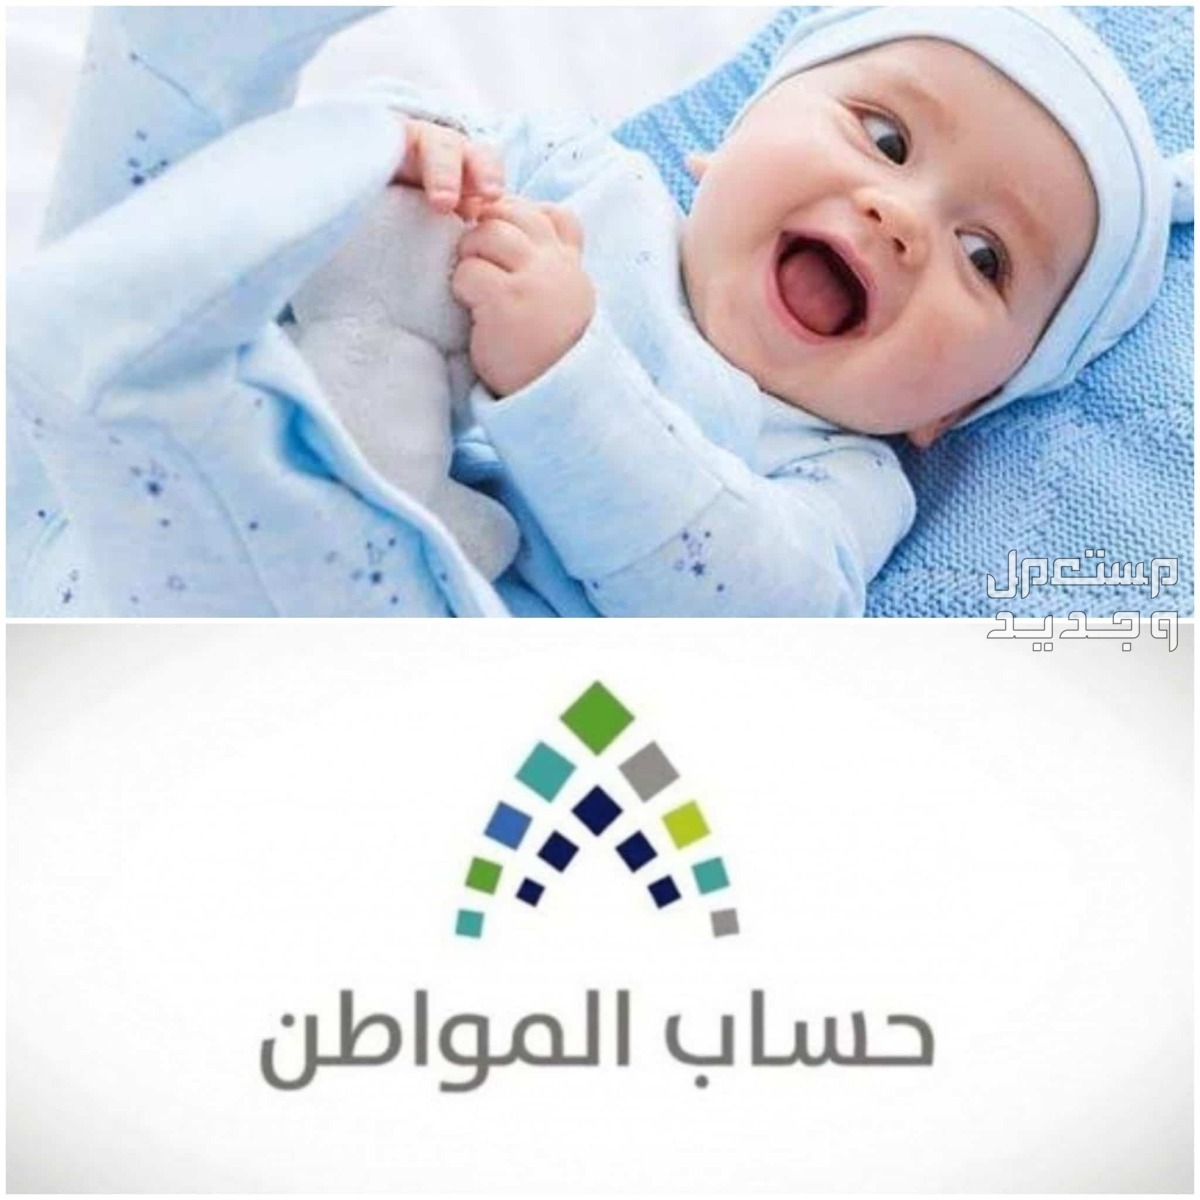 طريقة تسجيل المولود الجديد في حساب المواطن 1445 في المغرب تسجيل المولود الجديد في حساب المواطن